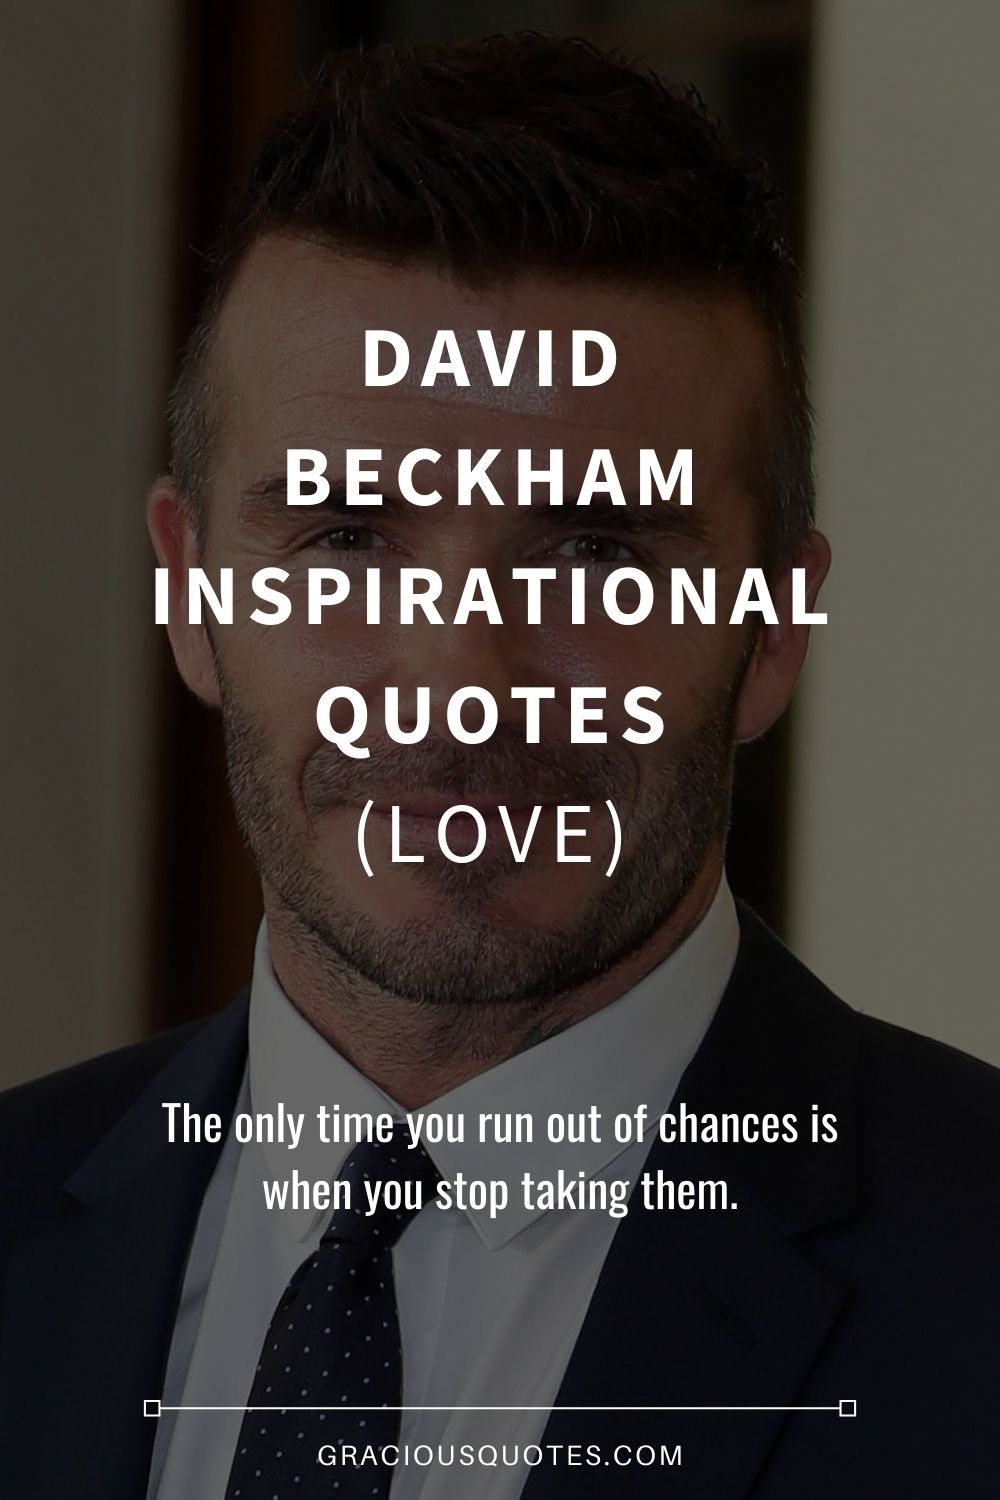 David Beckham Inspirational Quotes (LOVE) - Gracious Quotes